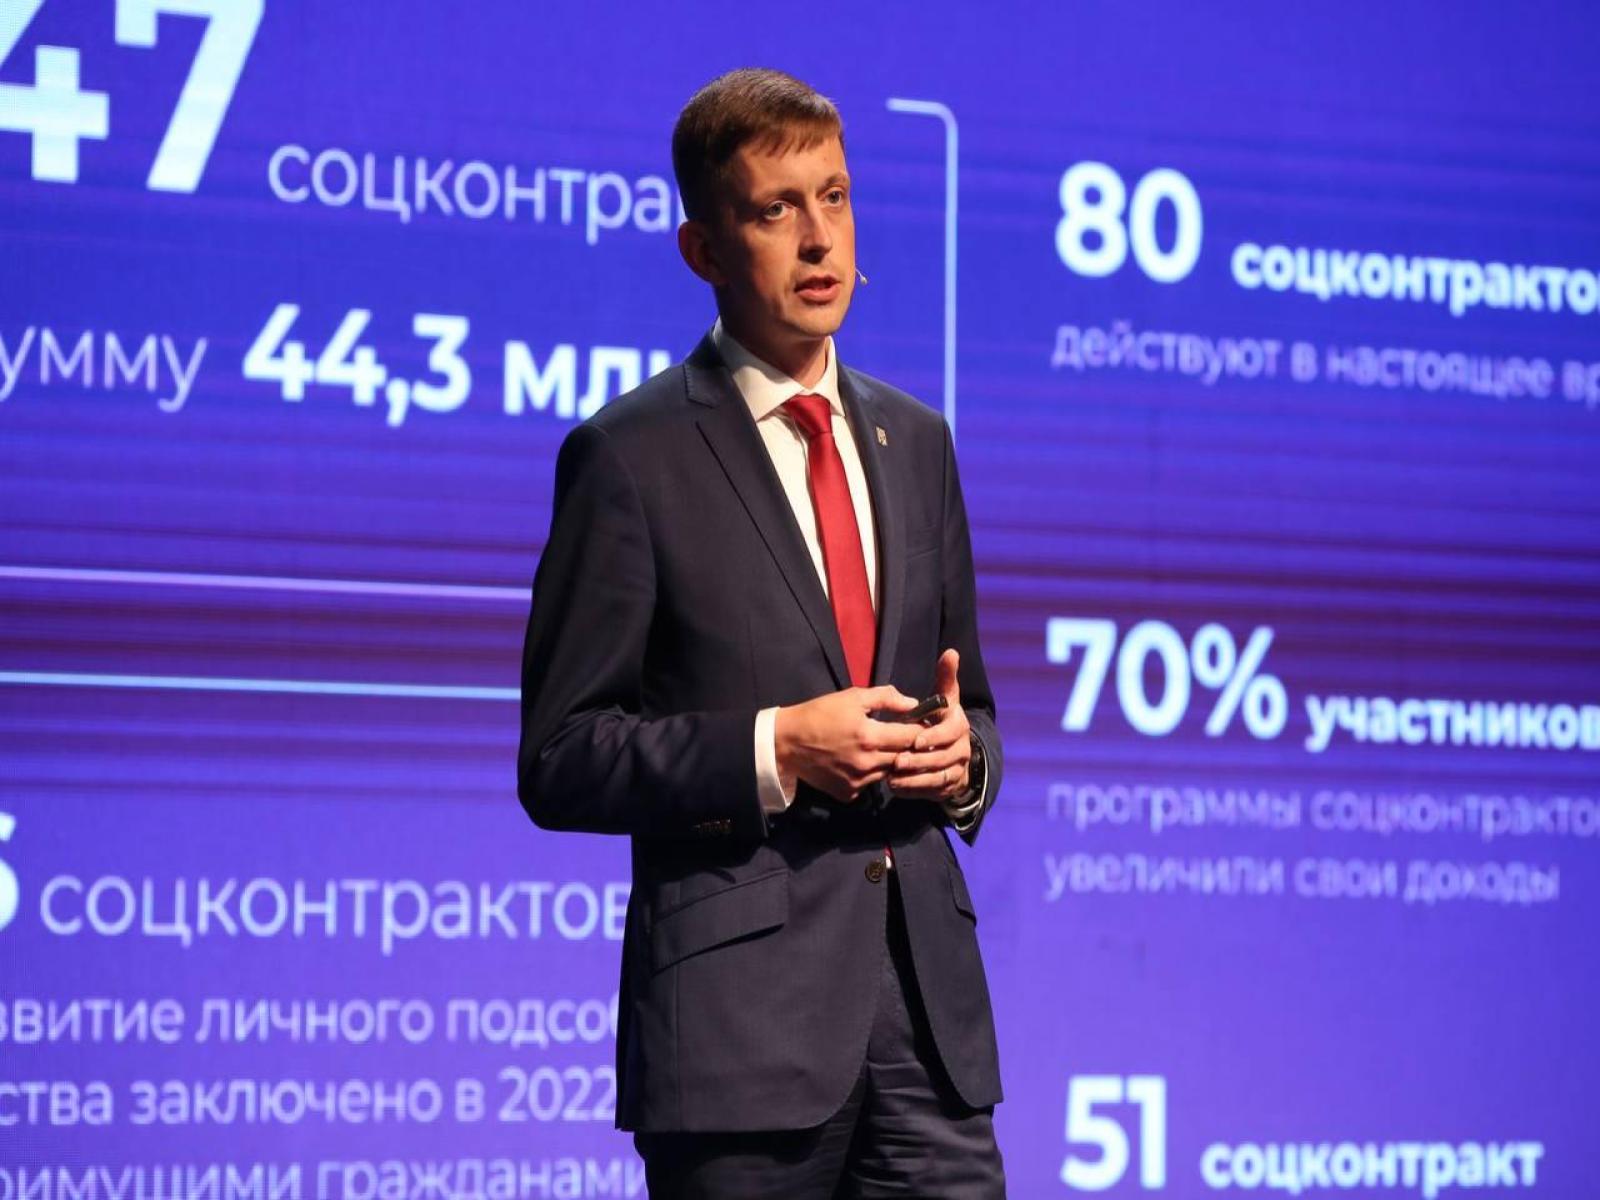 В рамках 13-го заседания Совета депутатов четвёртого созыва Андрей Чесноков представил отчёт о деятельности.